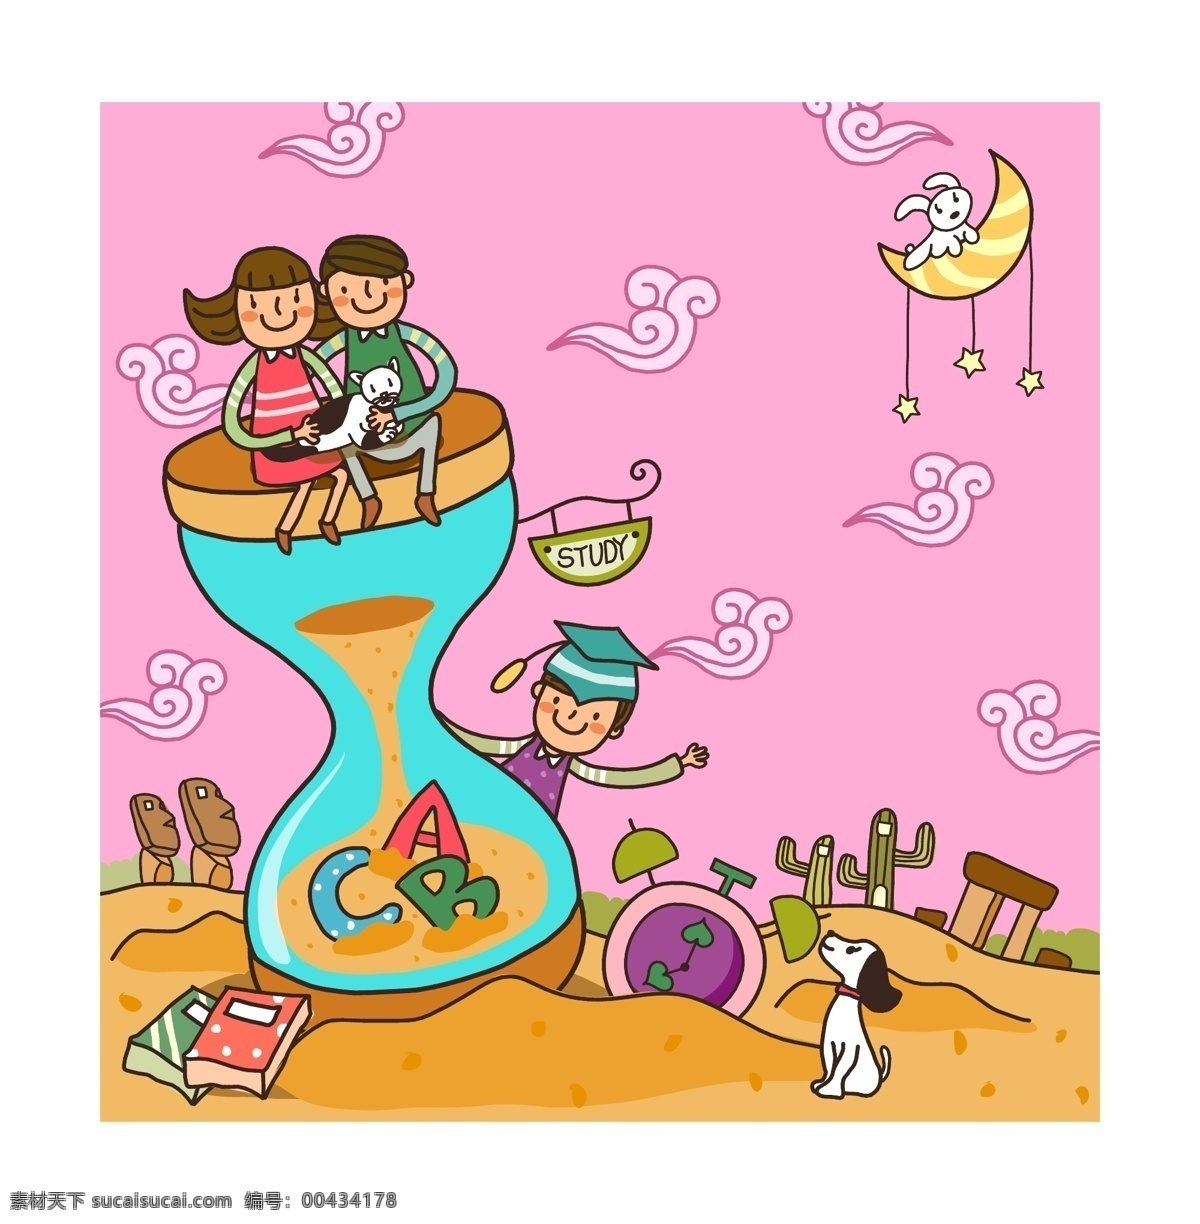 韩国 儿童教育 插画 矢量图 标签cdr 卡通cdr 卡通素材 女孩卡通图 男孩卡通图 其他矢量图